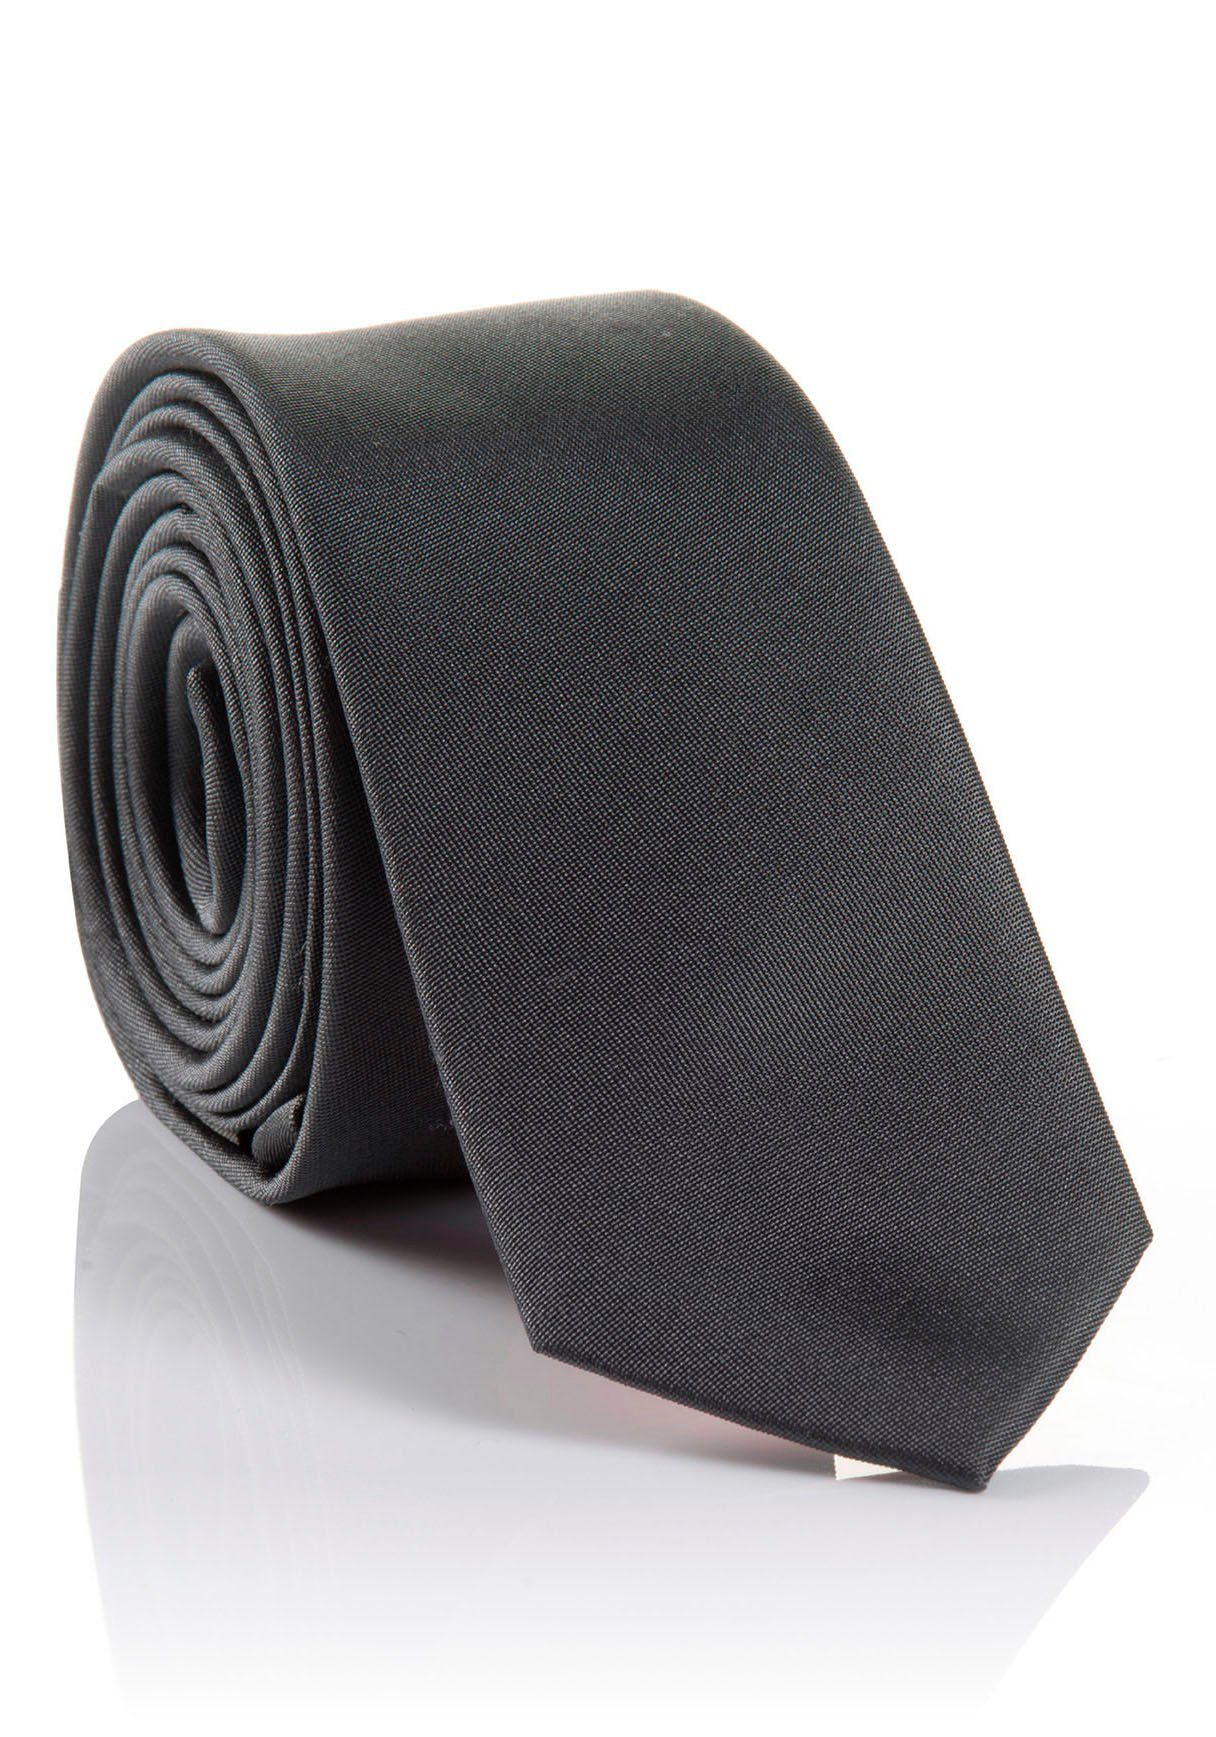 MONTI Krawatte Hochwertig Seidenkrawatte LORENZO verarbeitete Tragekomfort hohem grey mit